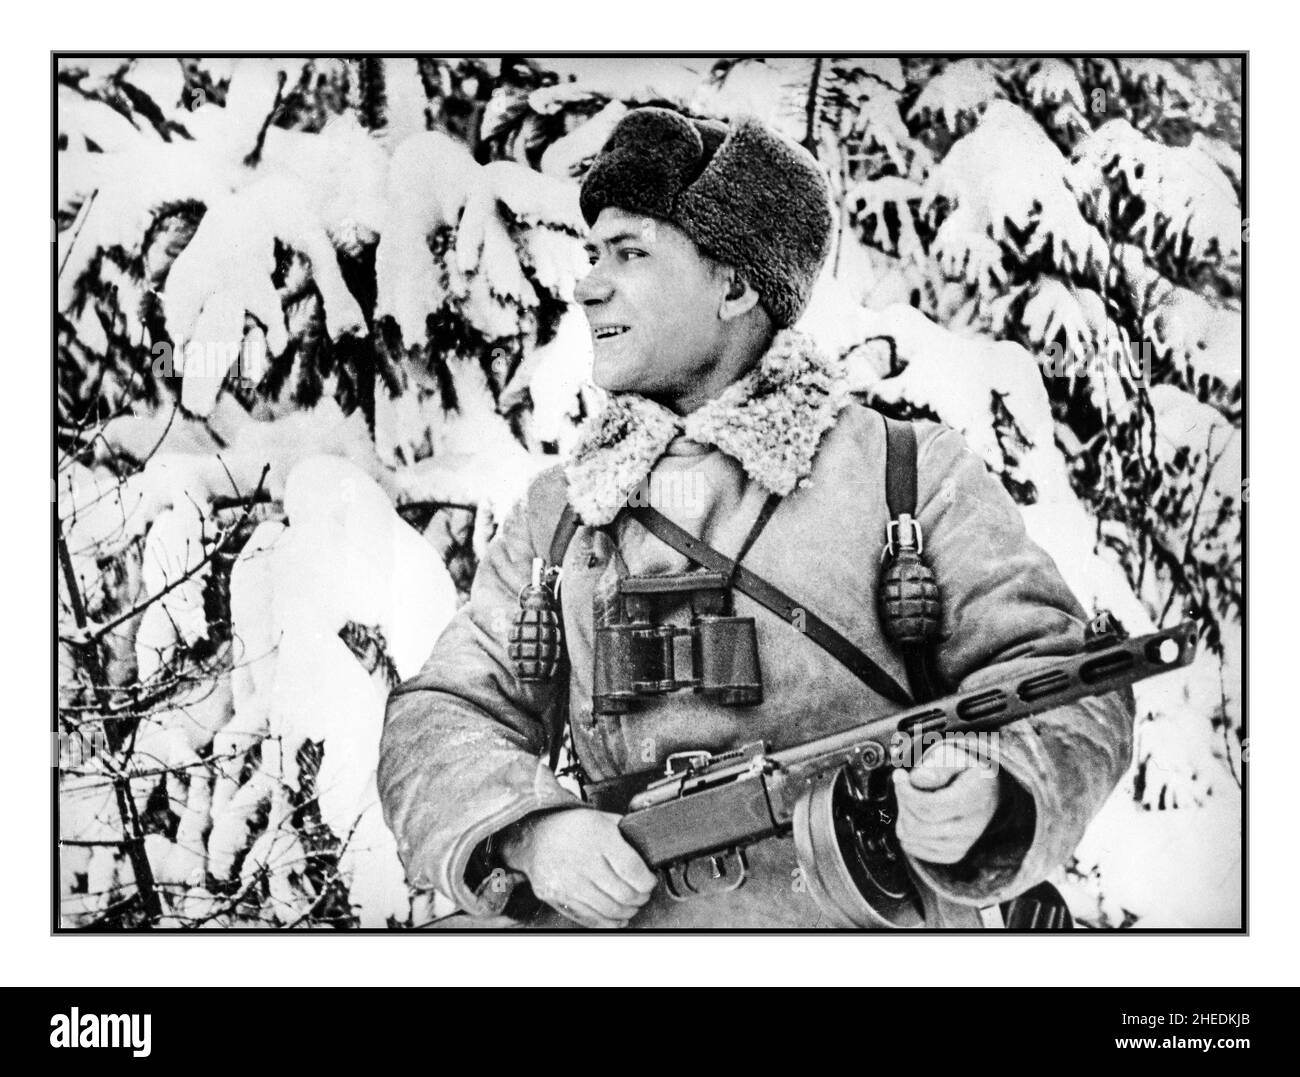 WW2 Grosser Vaterländischer Winterkrieg 1941 Sowjetischer russischer Soldat Pjotr Wassiljewitsch während des Zweiten Weltkriegs in seiner Winteruniform, mit schwerem Schnee hinten, mit einem russischen Maschinengewehr, das ebenfalls mit zwei Granaten an seinem Gurtband bewaffnet ist. Schlacht von Moskau gegen Nazi-Deutschland Besetzung. WW2 Zweiten Weltkrieg Stockfoto